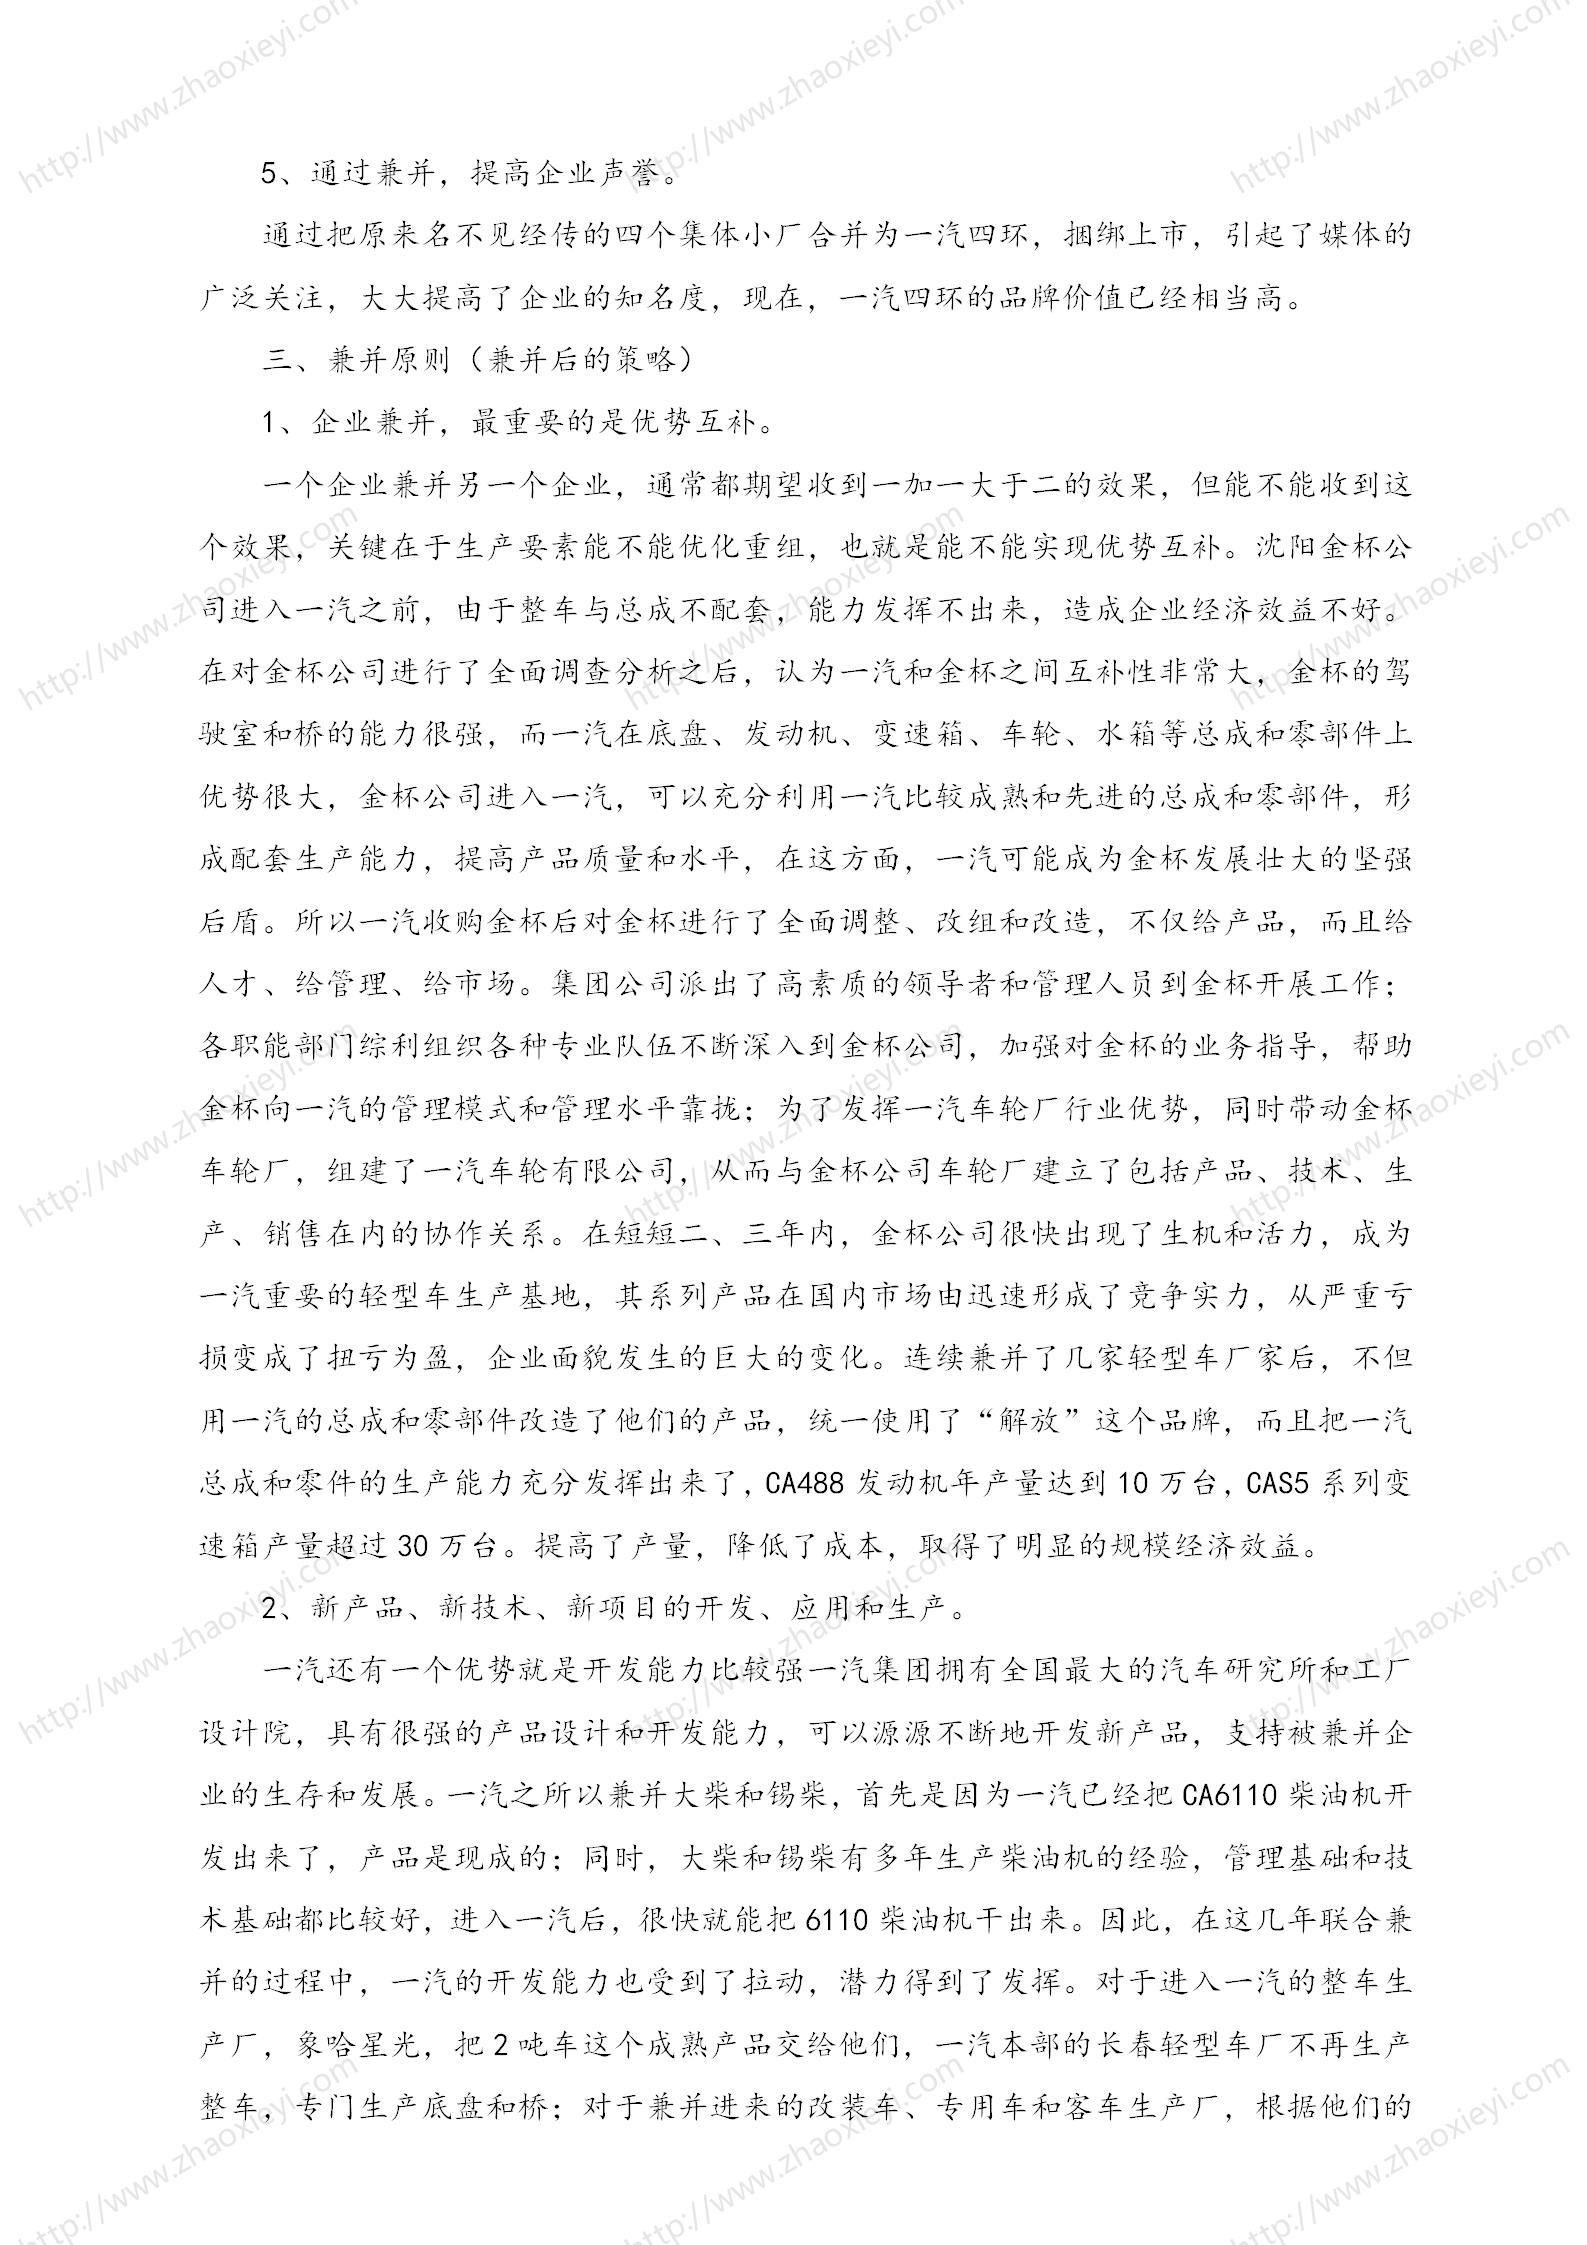 中国企业并购经典案例_169.jpg